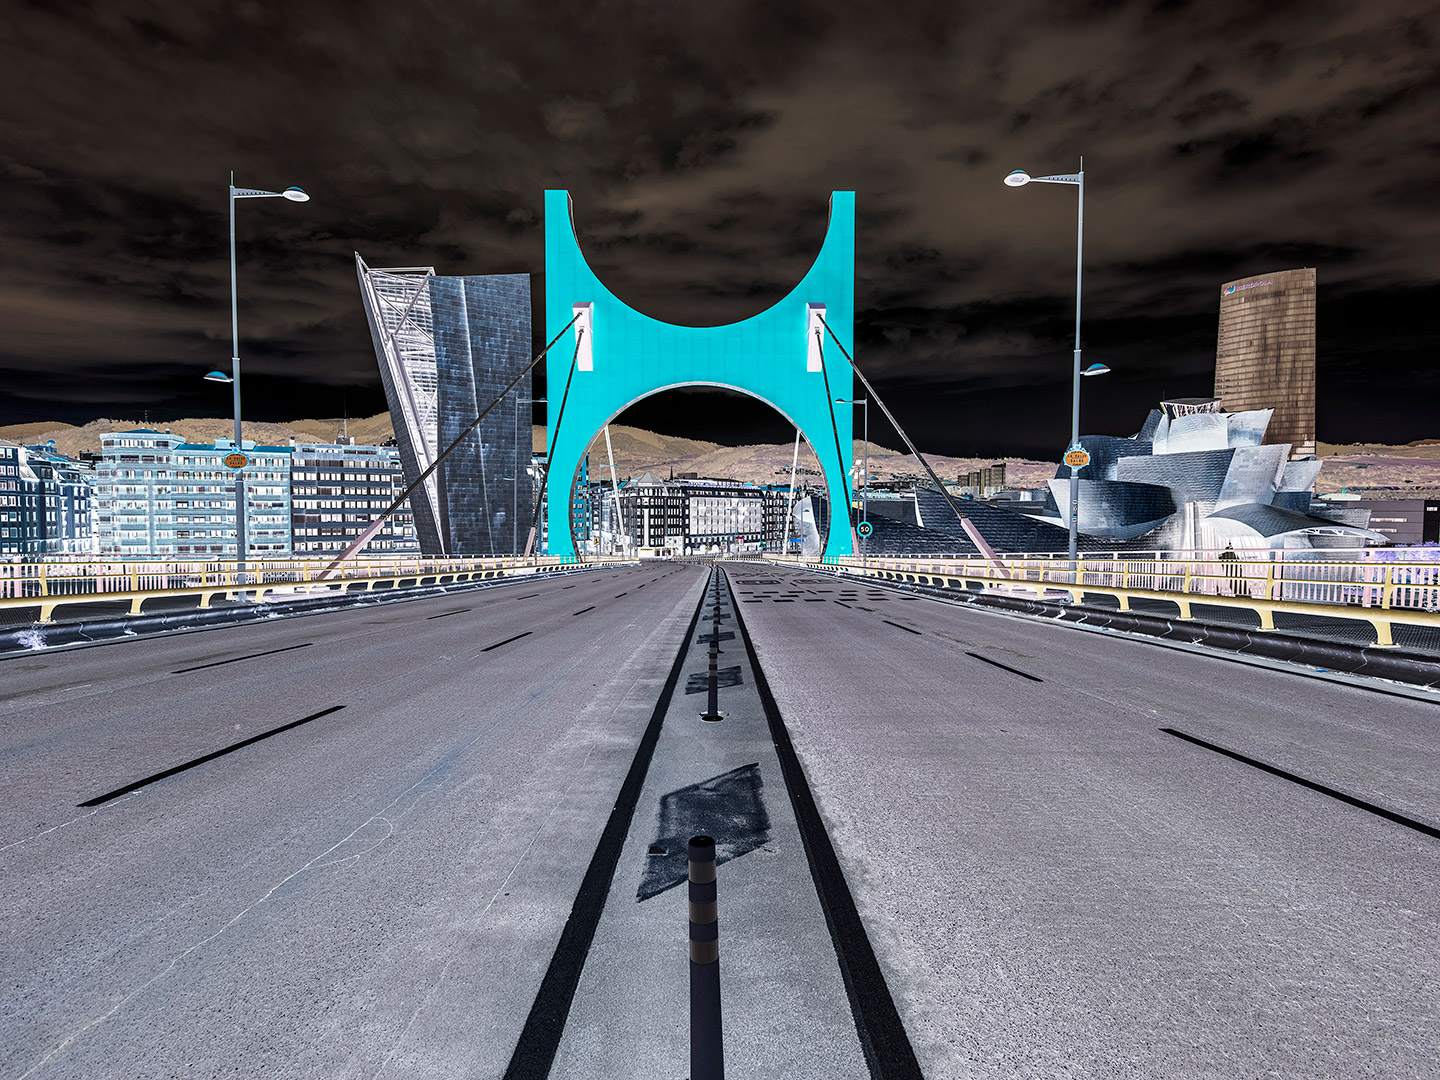 Puente de La Salve, Bilbao 10-04-2020 11:15 h - Impresión directa sobre Dibond